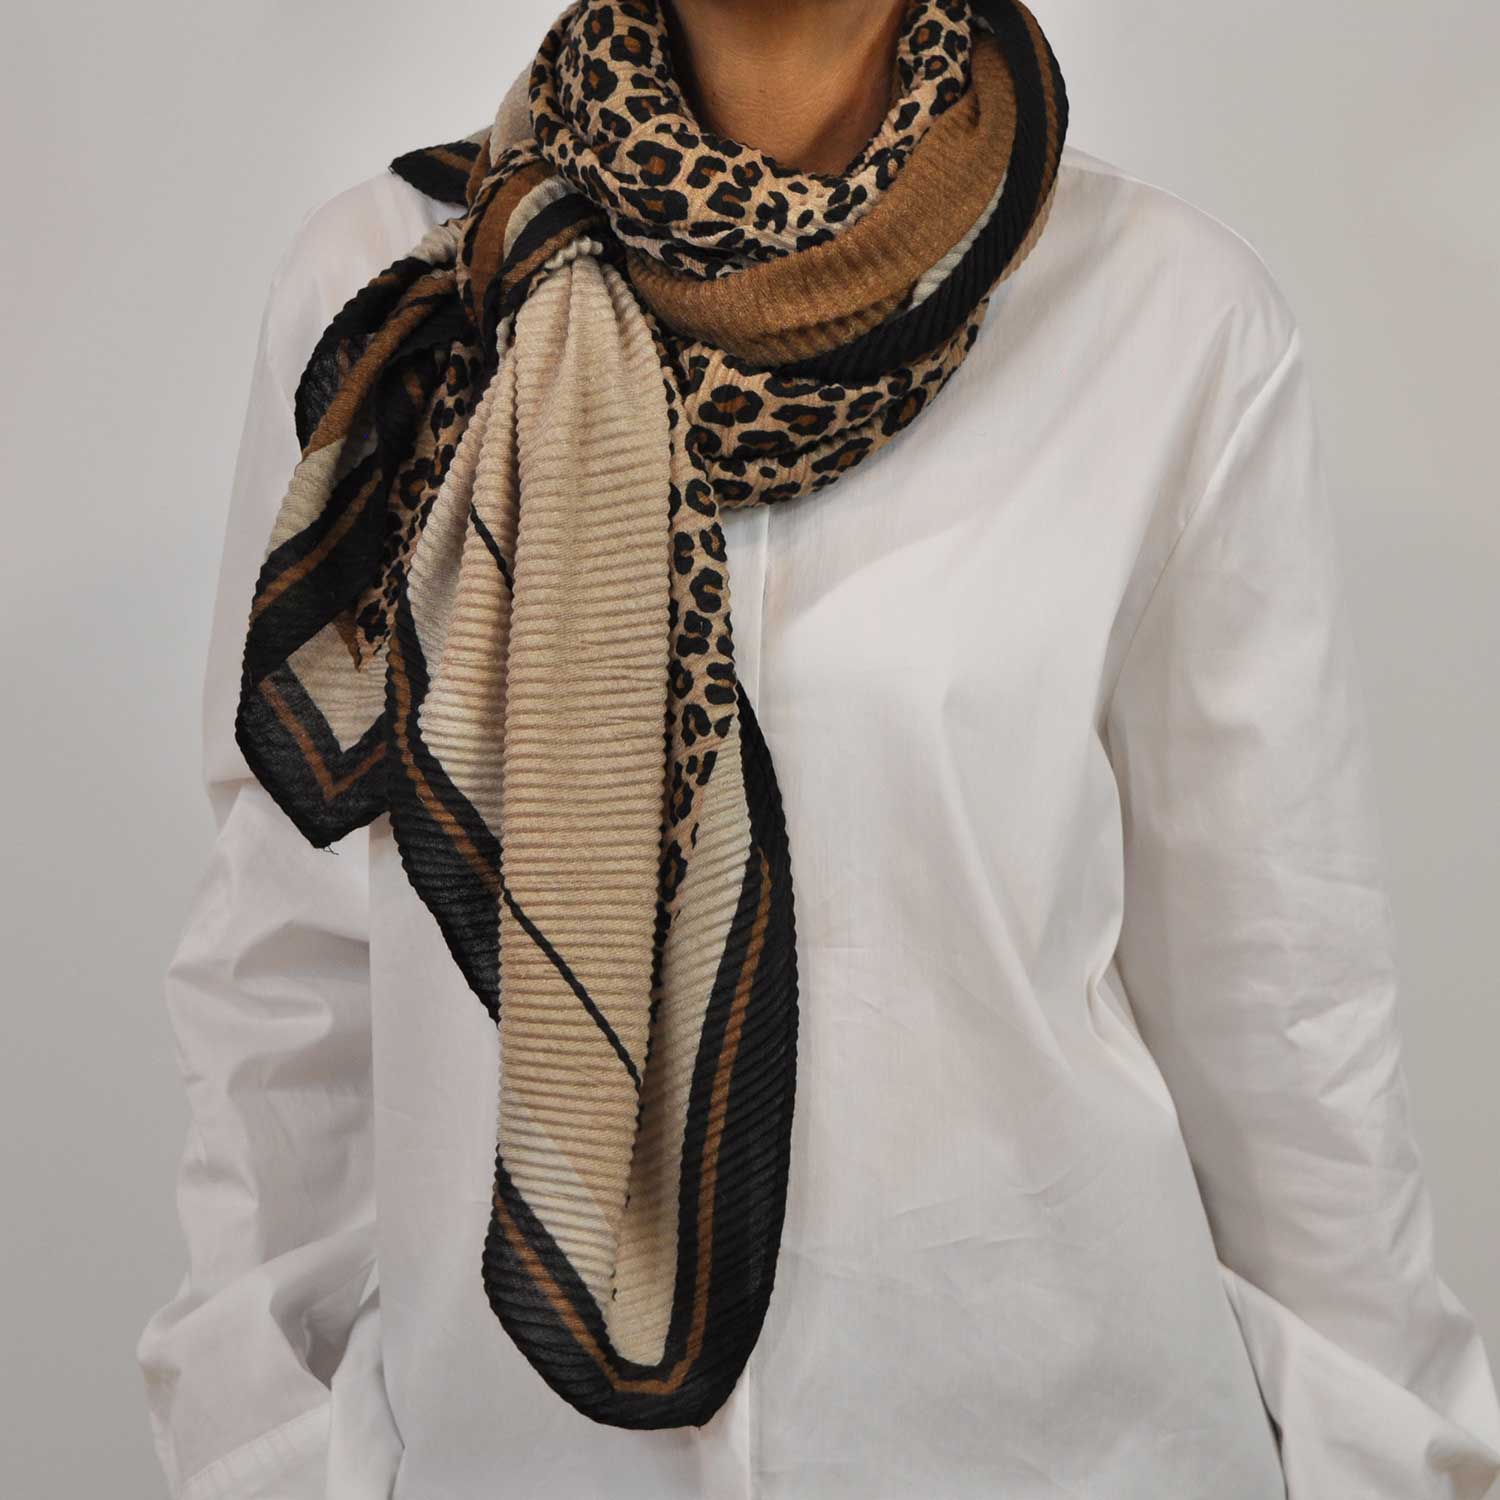 Beige leopard draped foulard